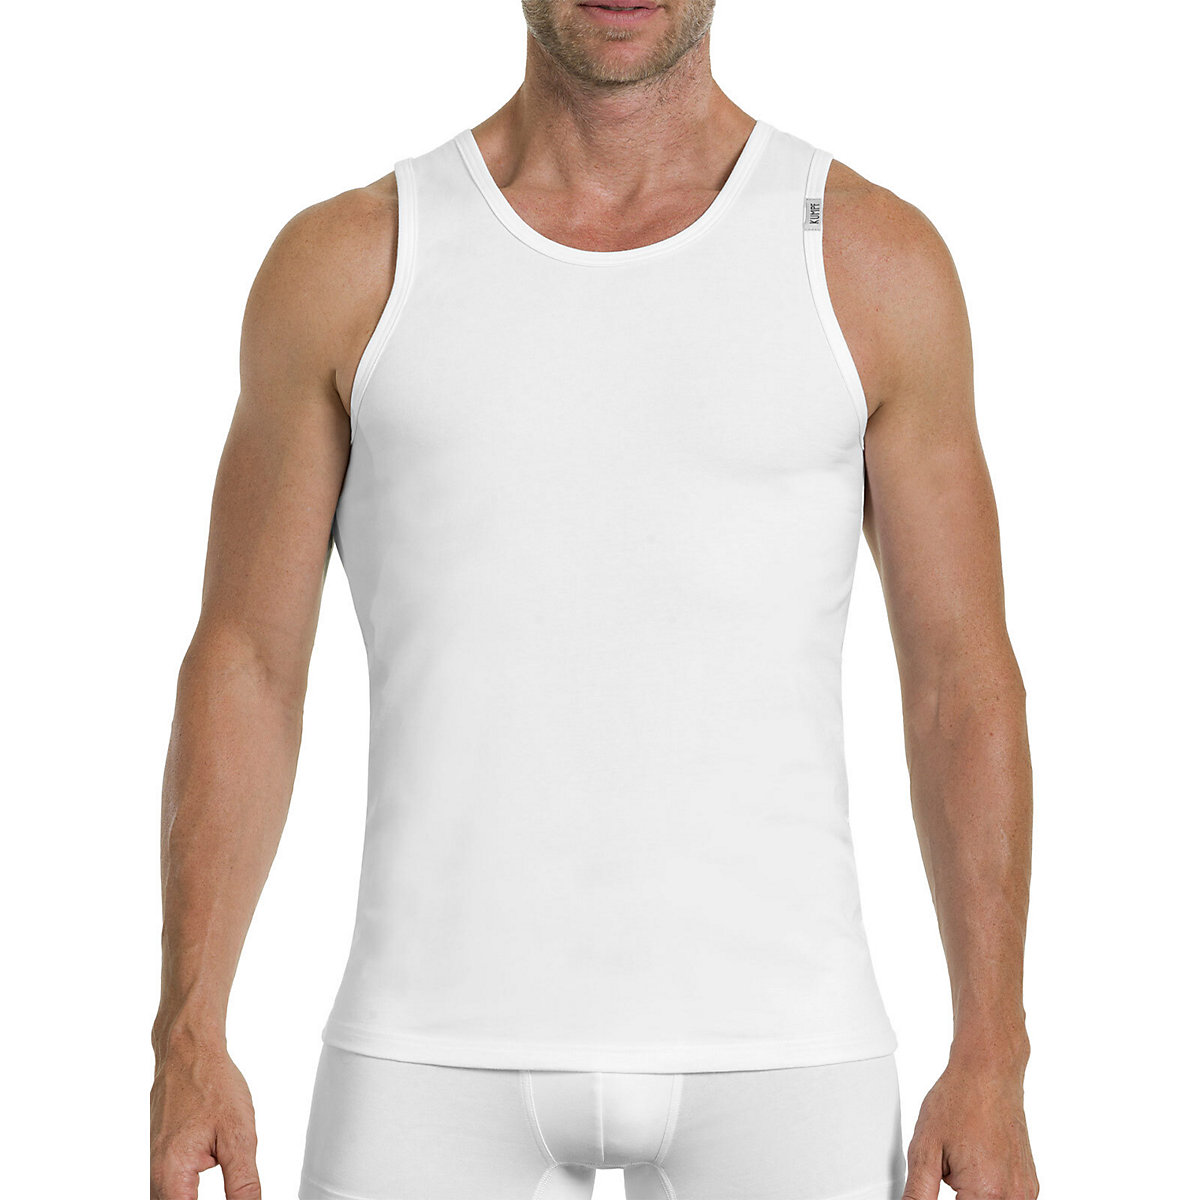 Kumpf Body Fashion 4er Sparpack Herren Unterhemd Bio Cotton Unterhemden weiß